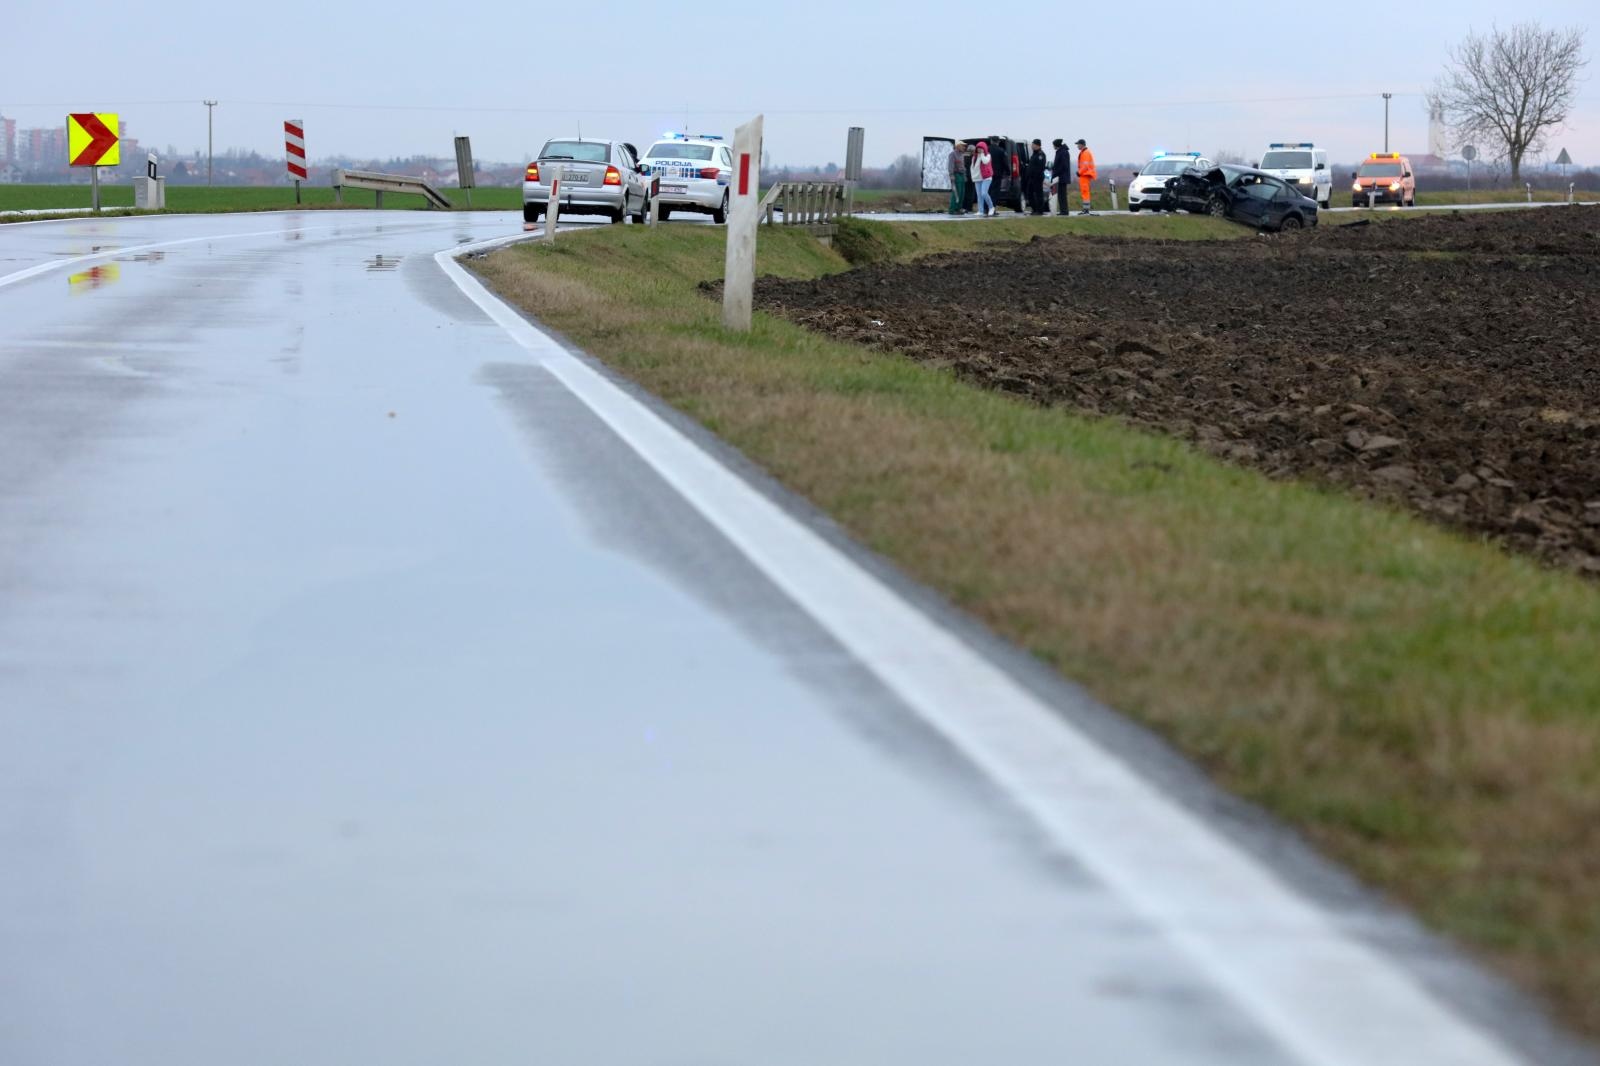 21.12.2019., Vukovar - Prometna nesreca s jednom poginulom osobom na cesti izmedju Trpinje i Vukovara. Photo: Dubravka Petric/PIXSELL